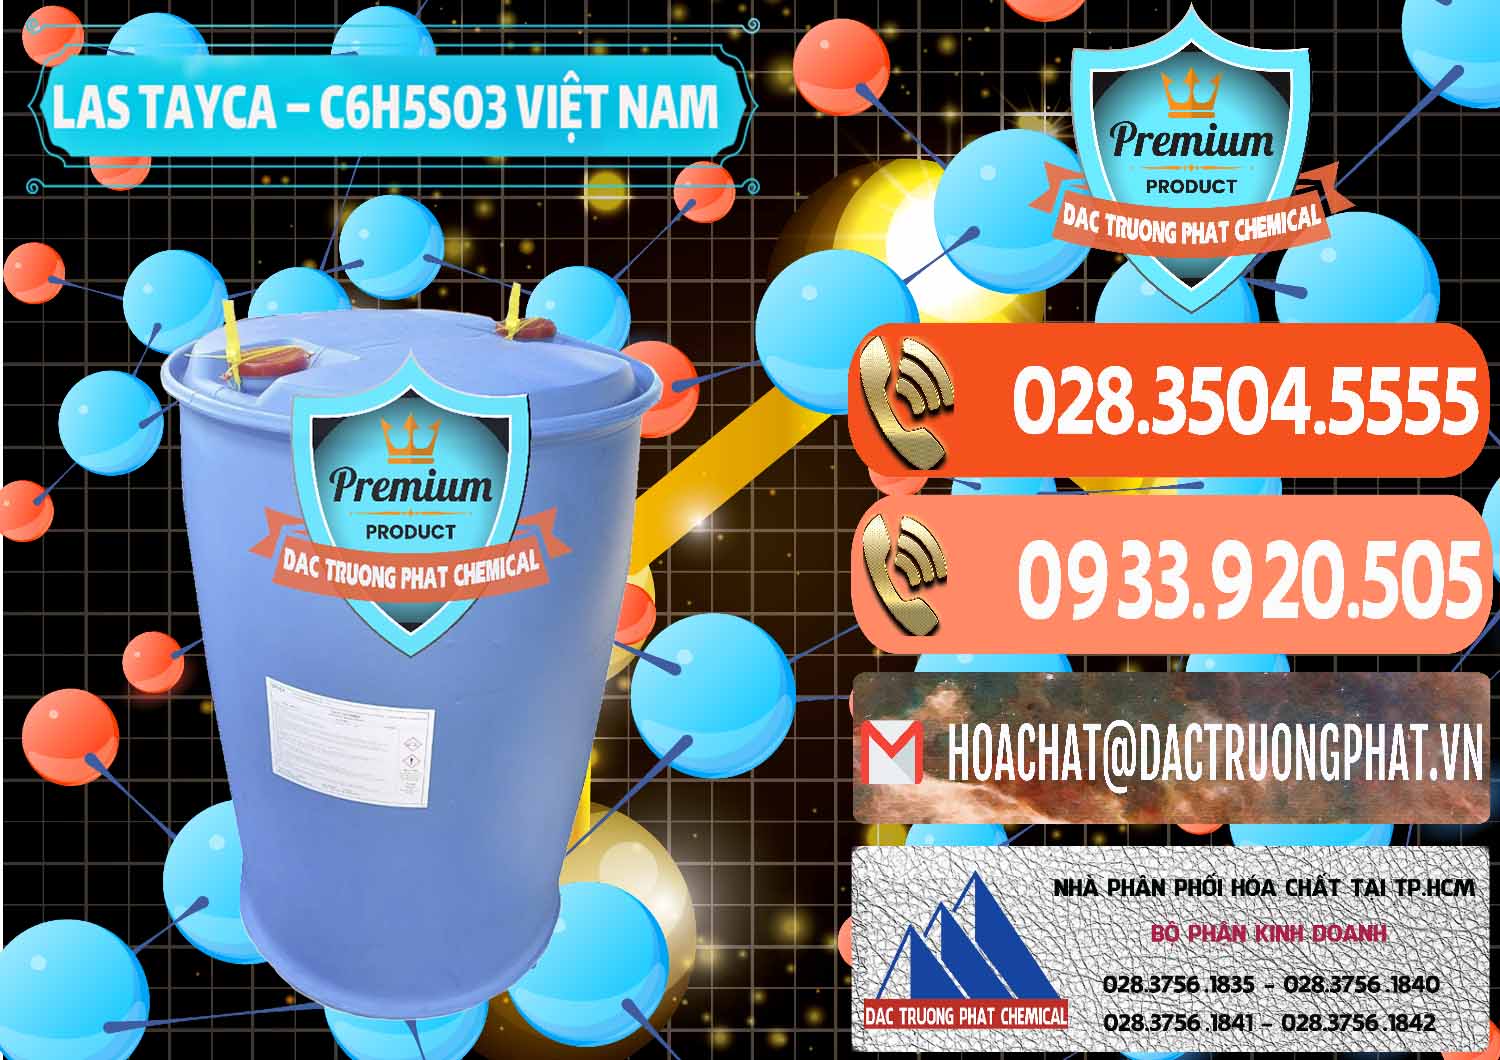 Nơi chuyên bán và phân phối Chất tạo bọt Las Tayca Việt Nam - 0305 - Công ty chuyên cung ứng và phân phối hóa chất tại TP.HCM - hoachatmientay.com